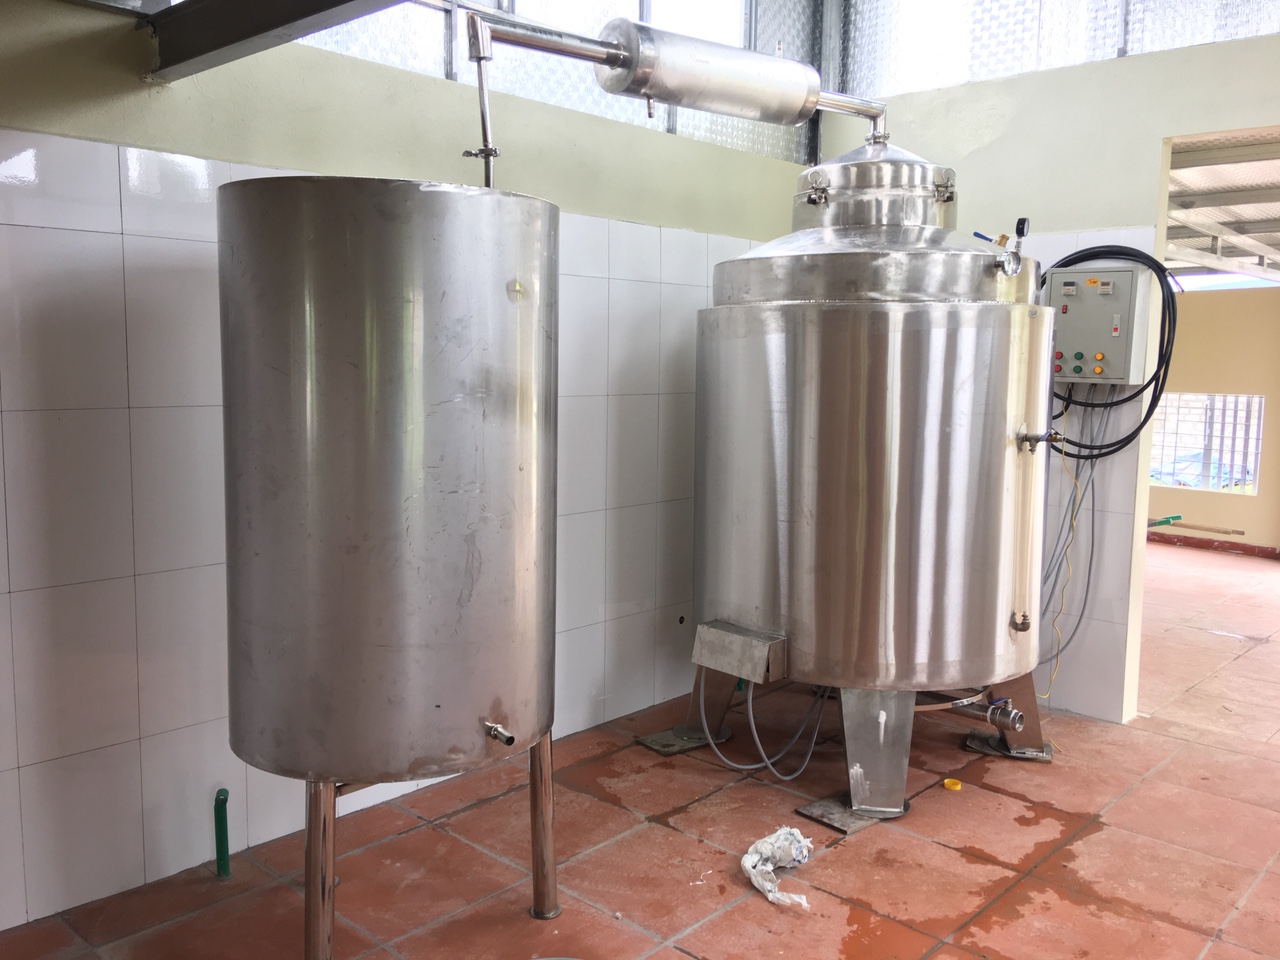 Quy trình sản xuất rượu gạo truyền thống  KAG Việt Nam  0904685252